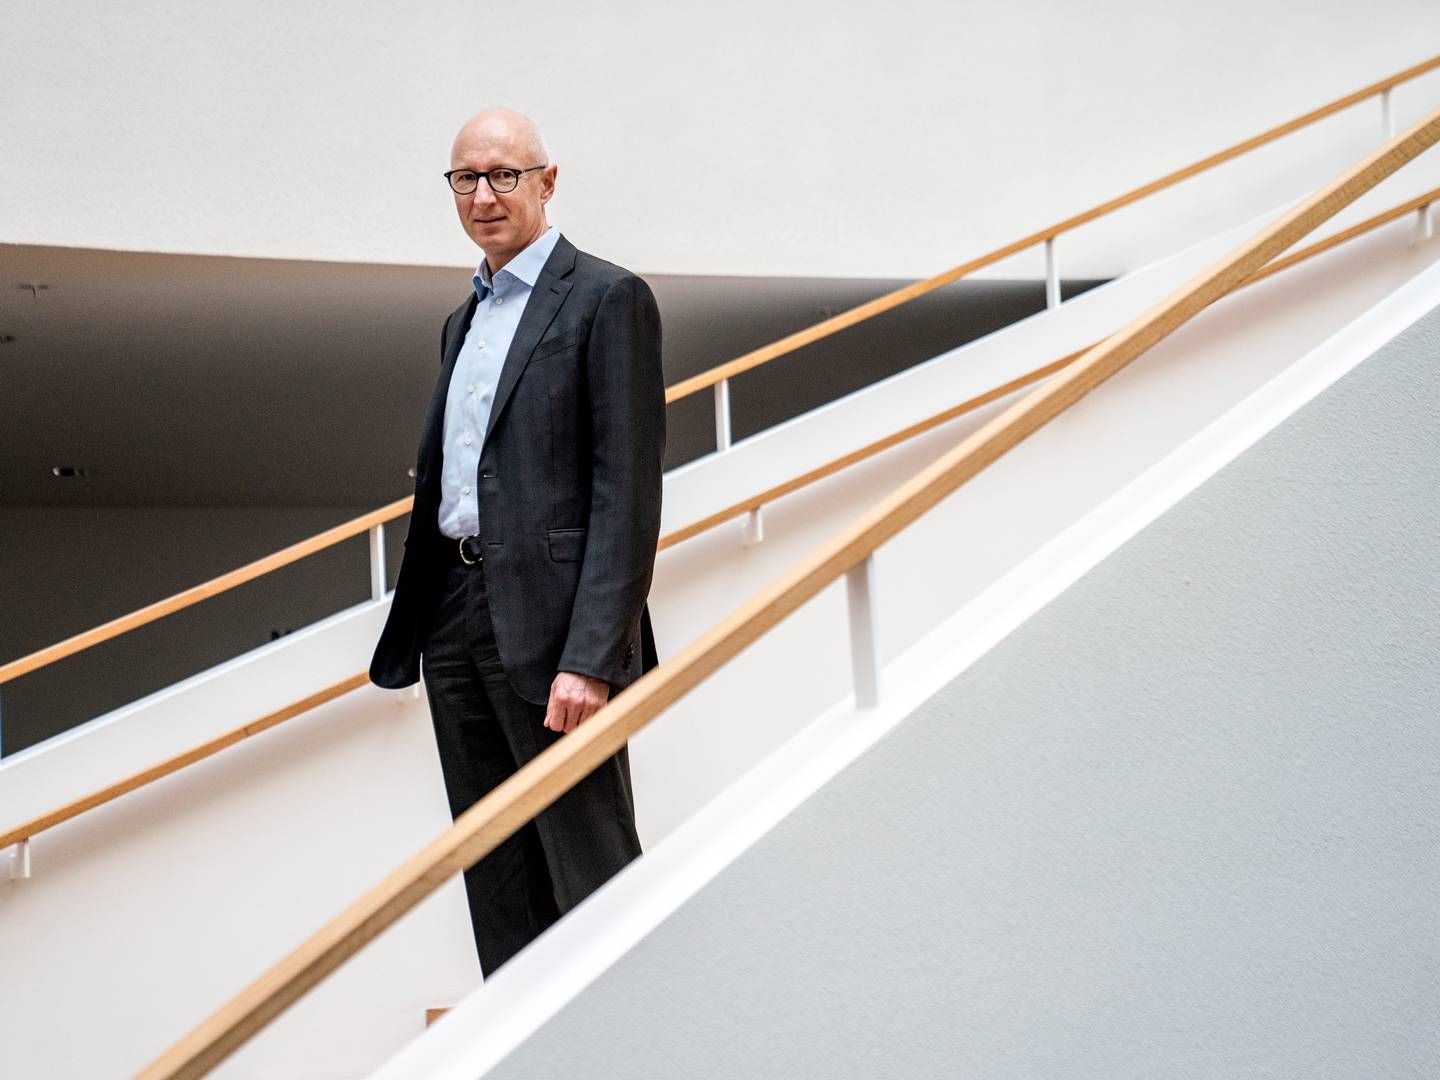 Lars Fruergaard Jørgensen is CEO of Novo Nordisk. | Photo: Stine Bidstrup